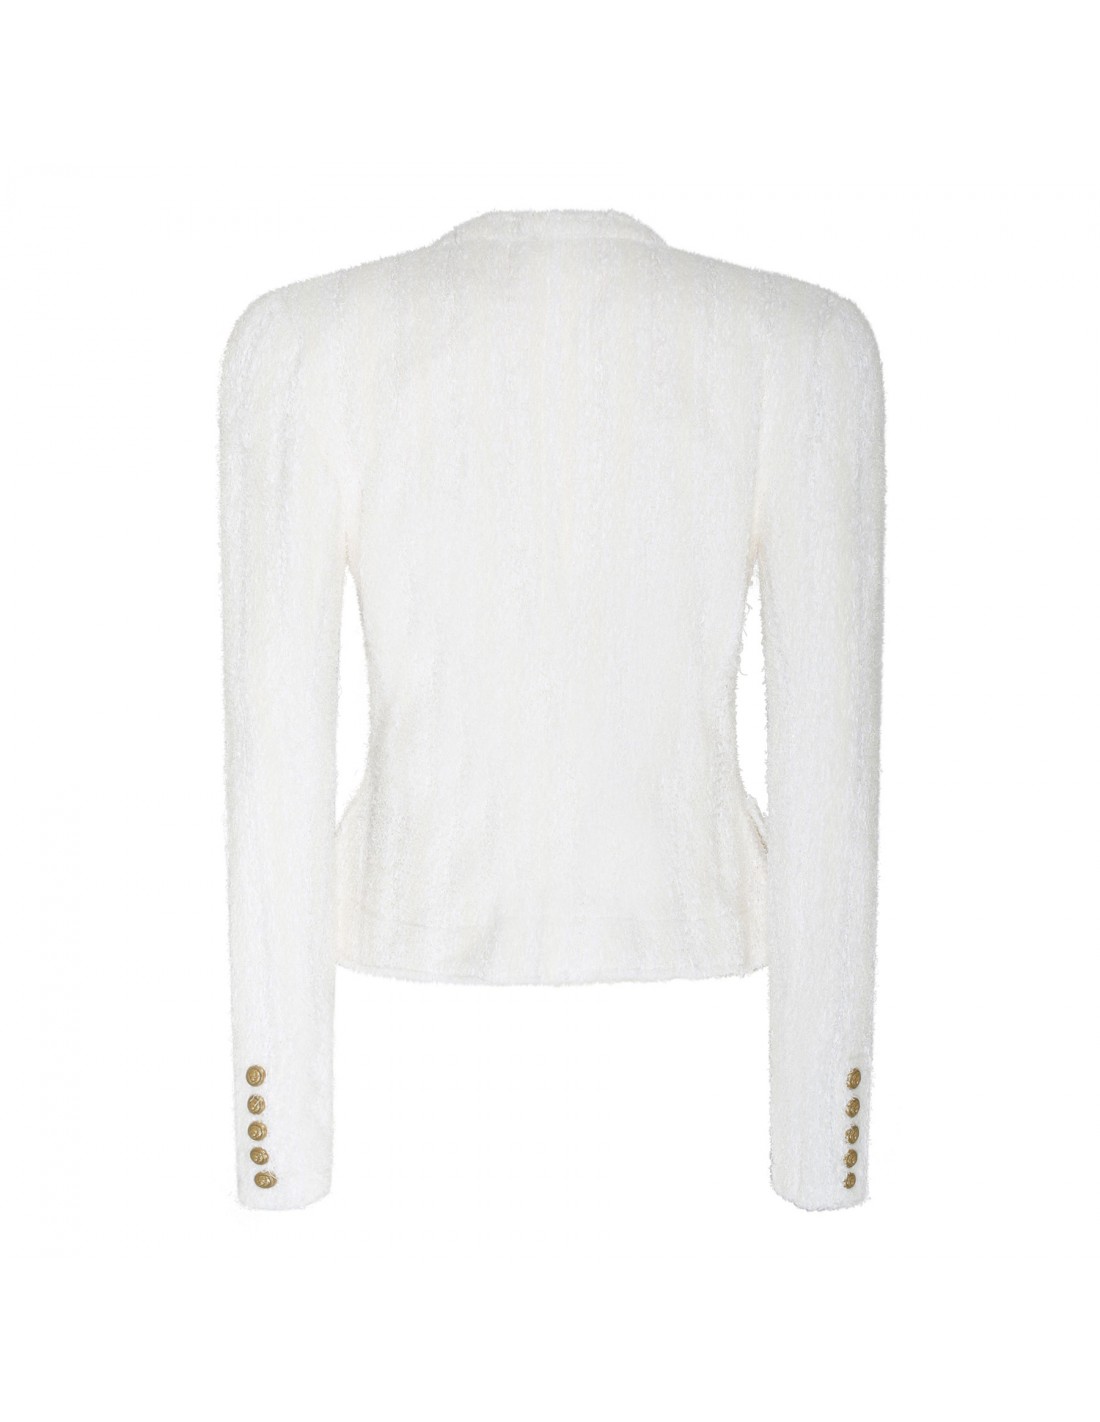 Collarless white tweed jacket